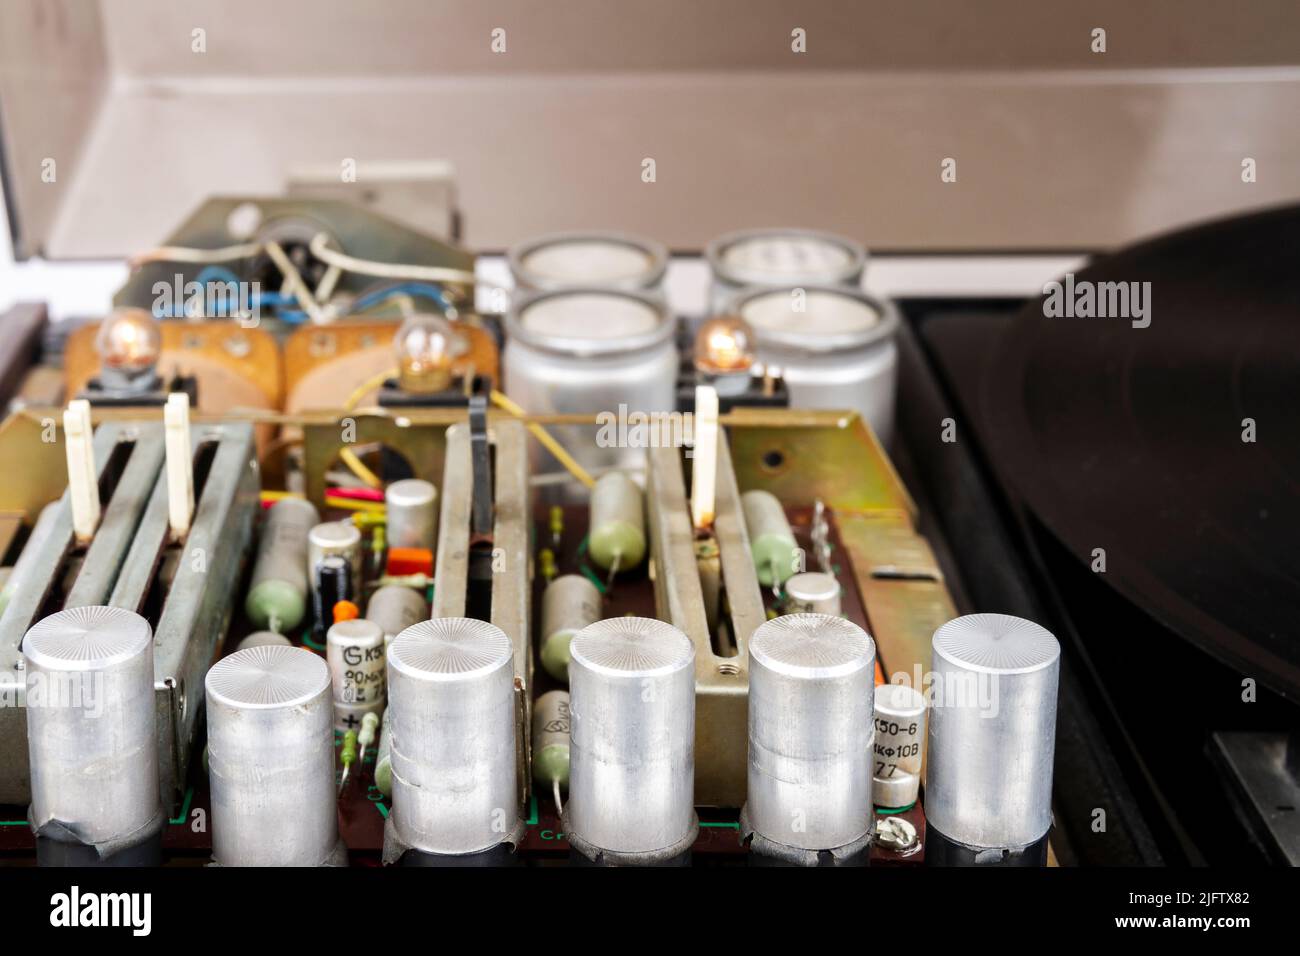 Vista interna del giradischi con amplificatore, condensatori, bobine e altri componenti Foto Stock